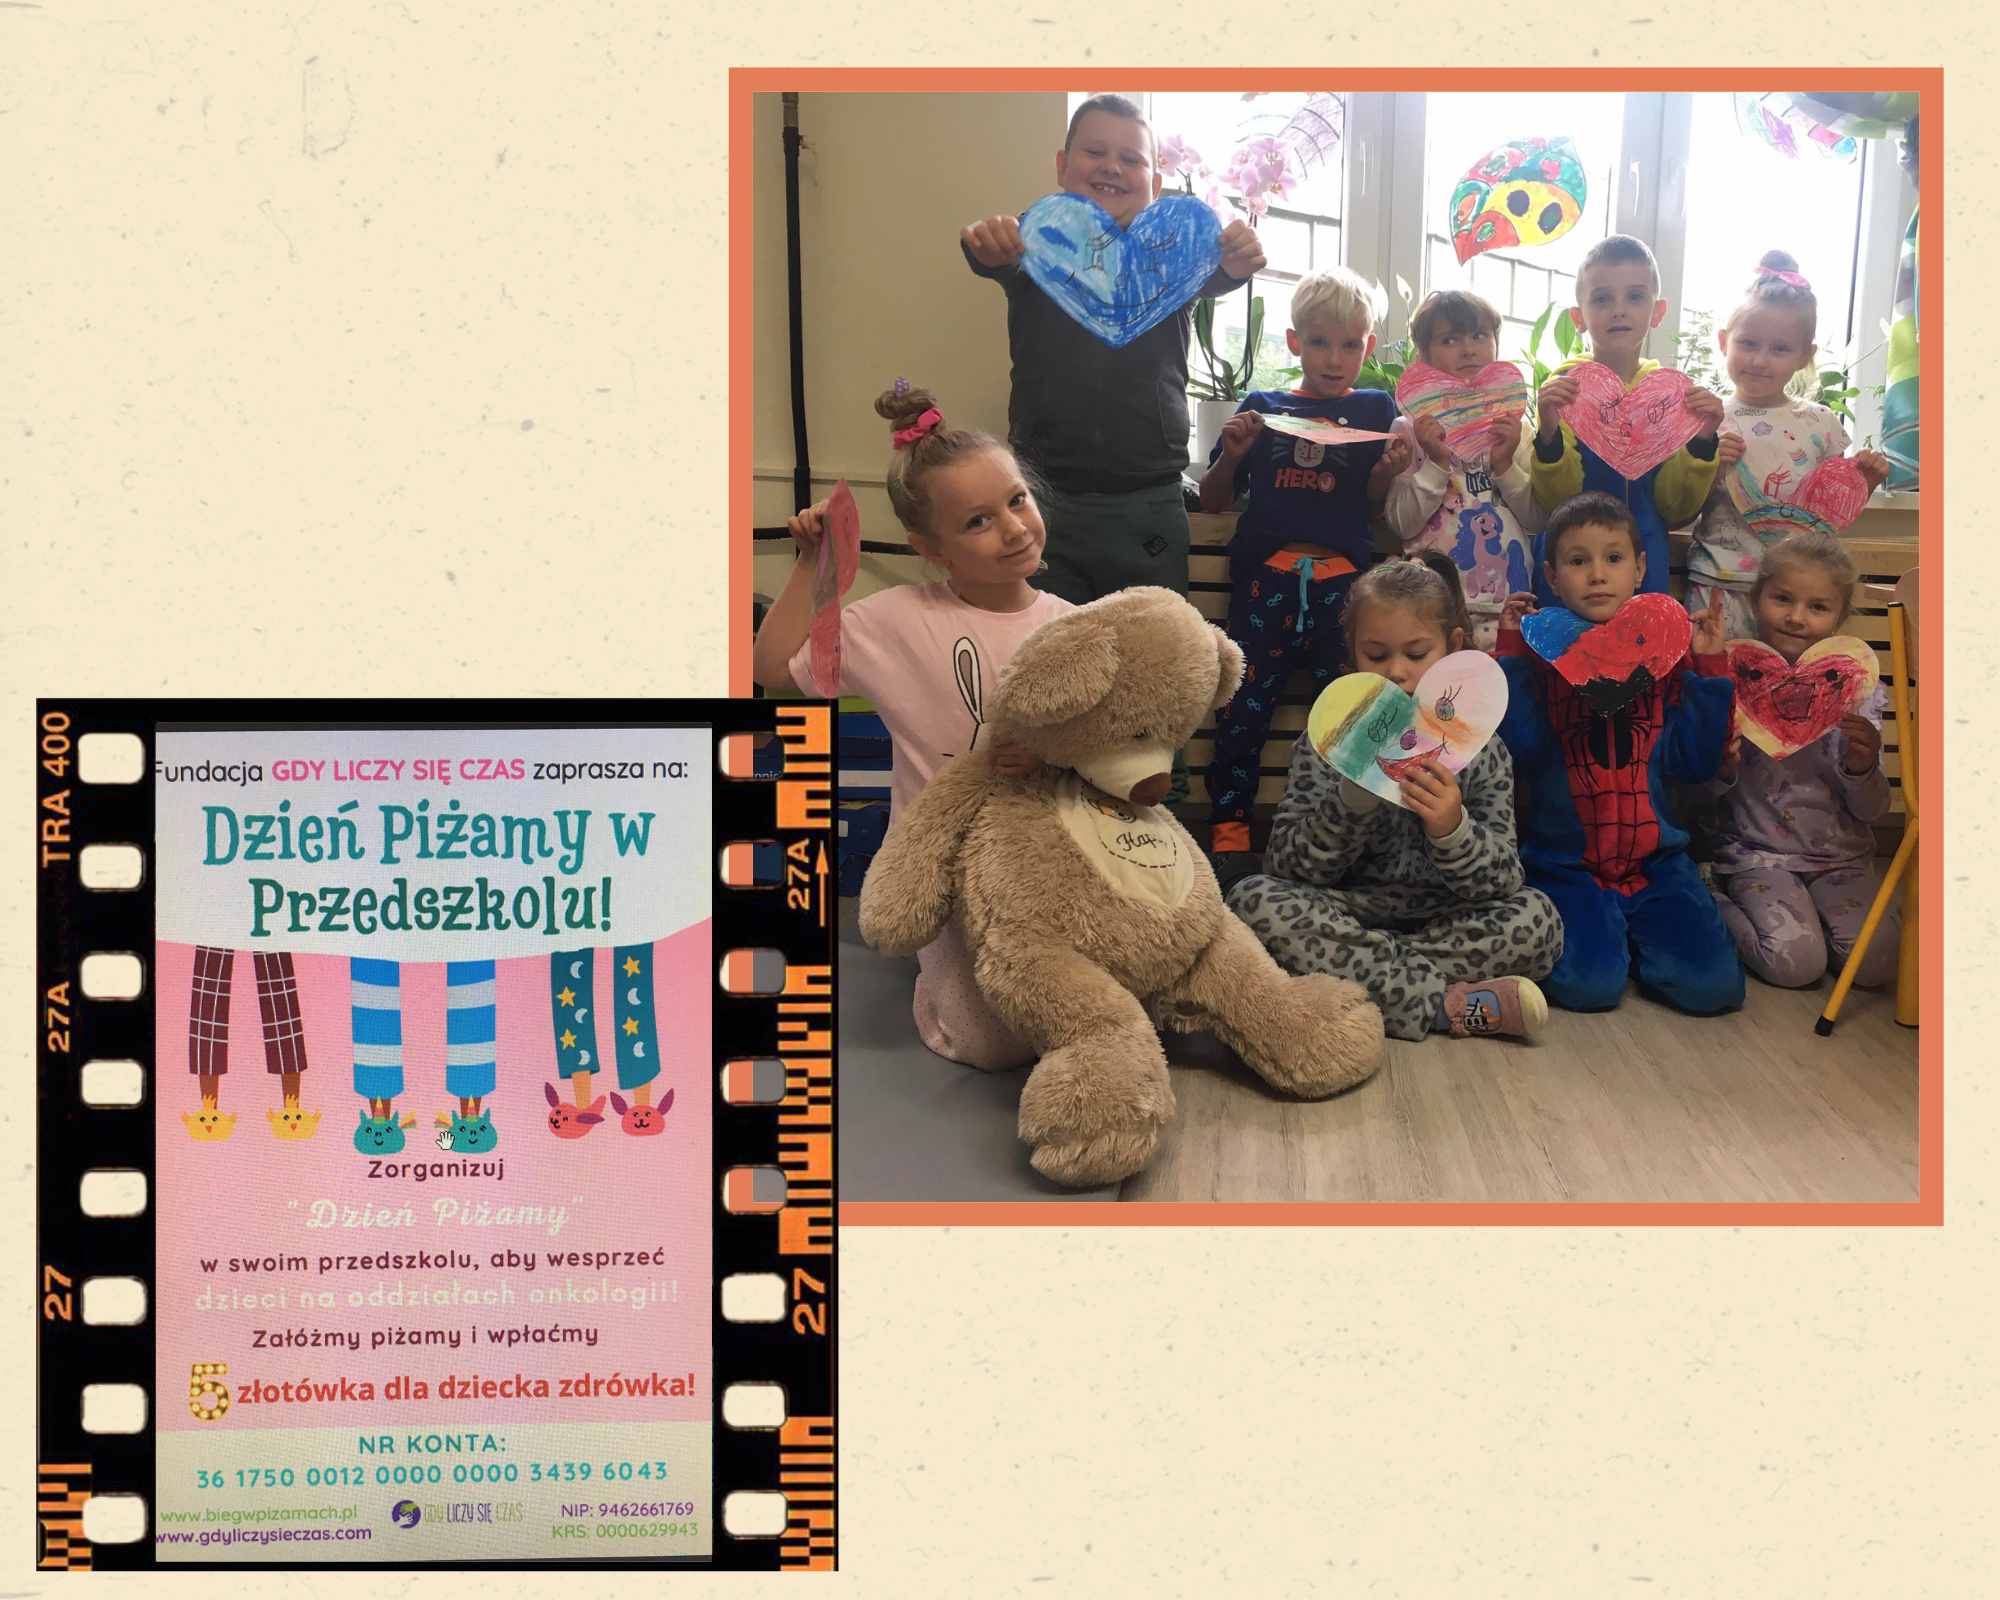 plakat informujący o dniu piżamy oraz przedszkolaki w piżamach